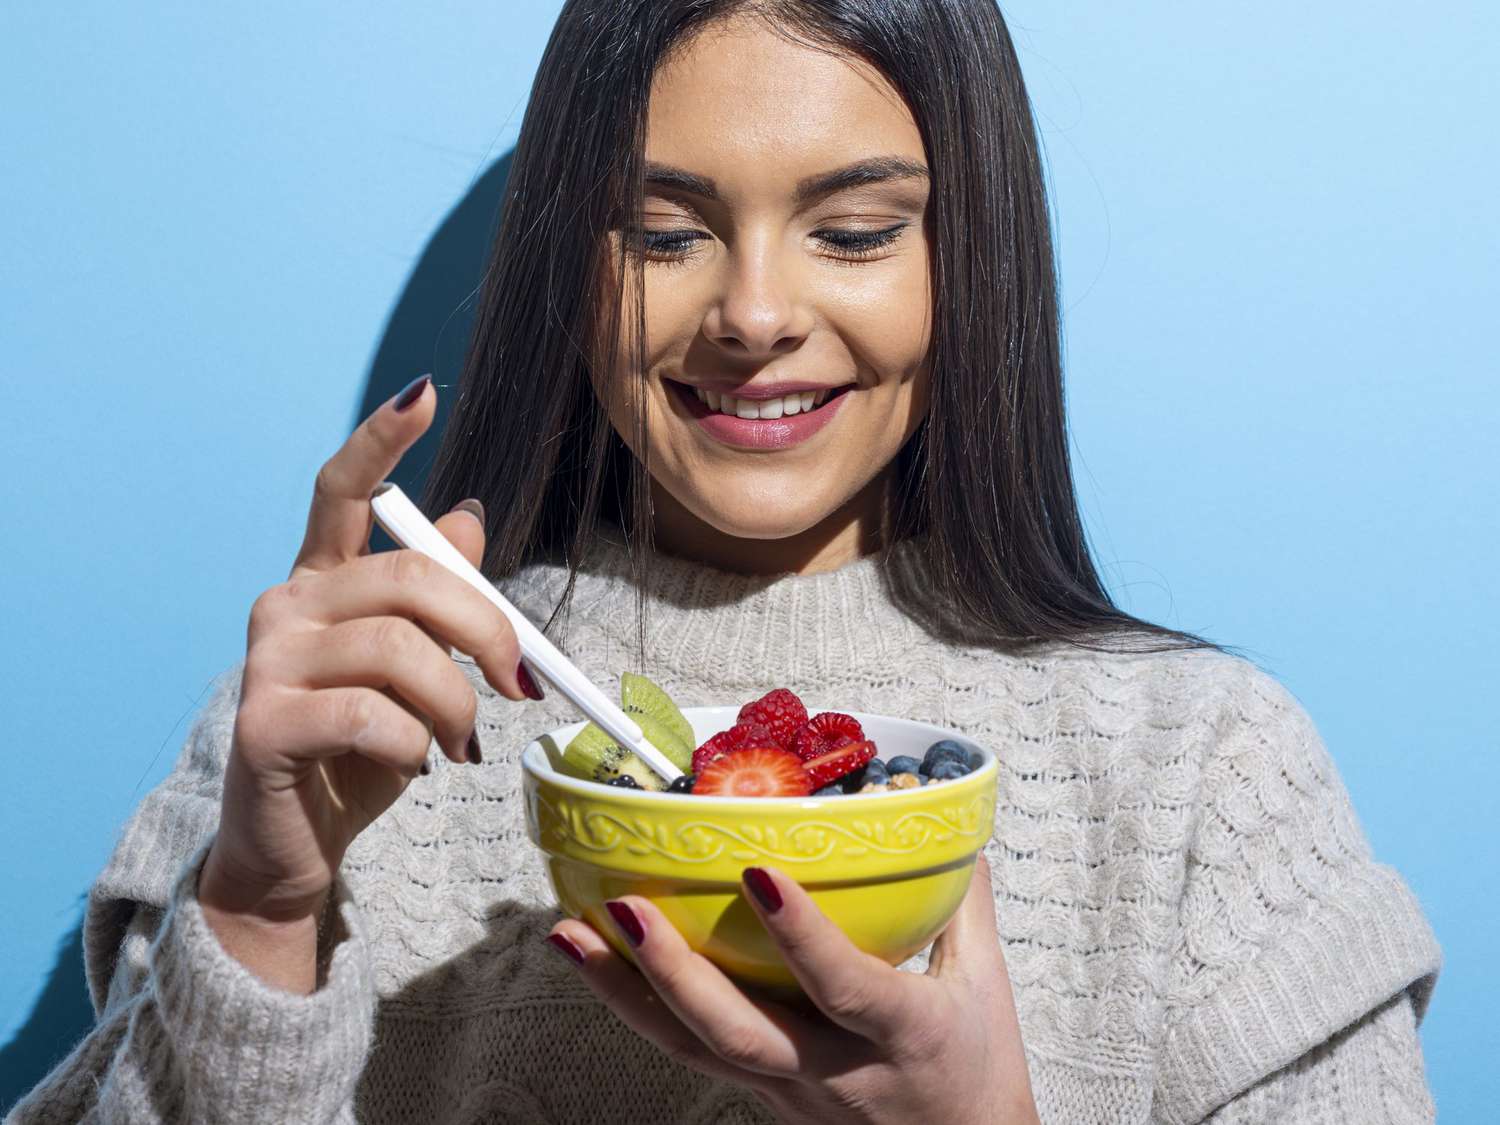 Young woman eating muesli breakfast